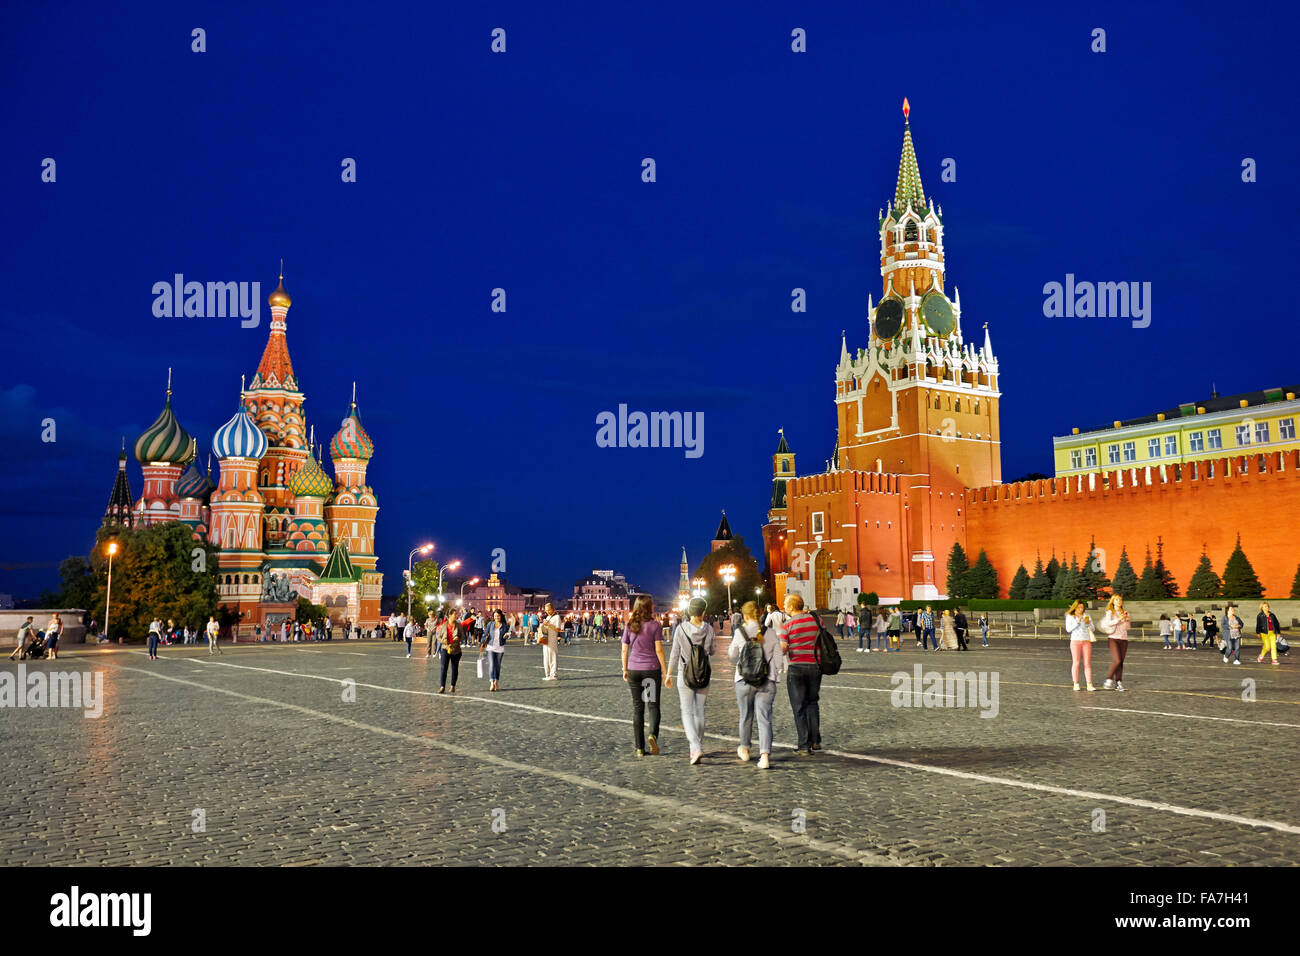 Touristen spazieren auf dem Roten Platz in der Nähe des Spasskaya-Turms und der Kathedrale des heiligen Basilius, die nachts hell erleuchtet ist. Moskau, Russland. Stockfoto